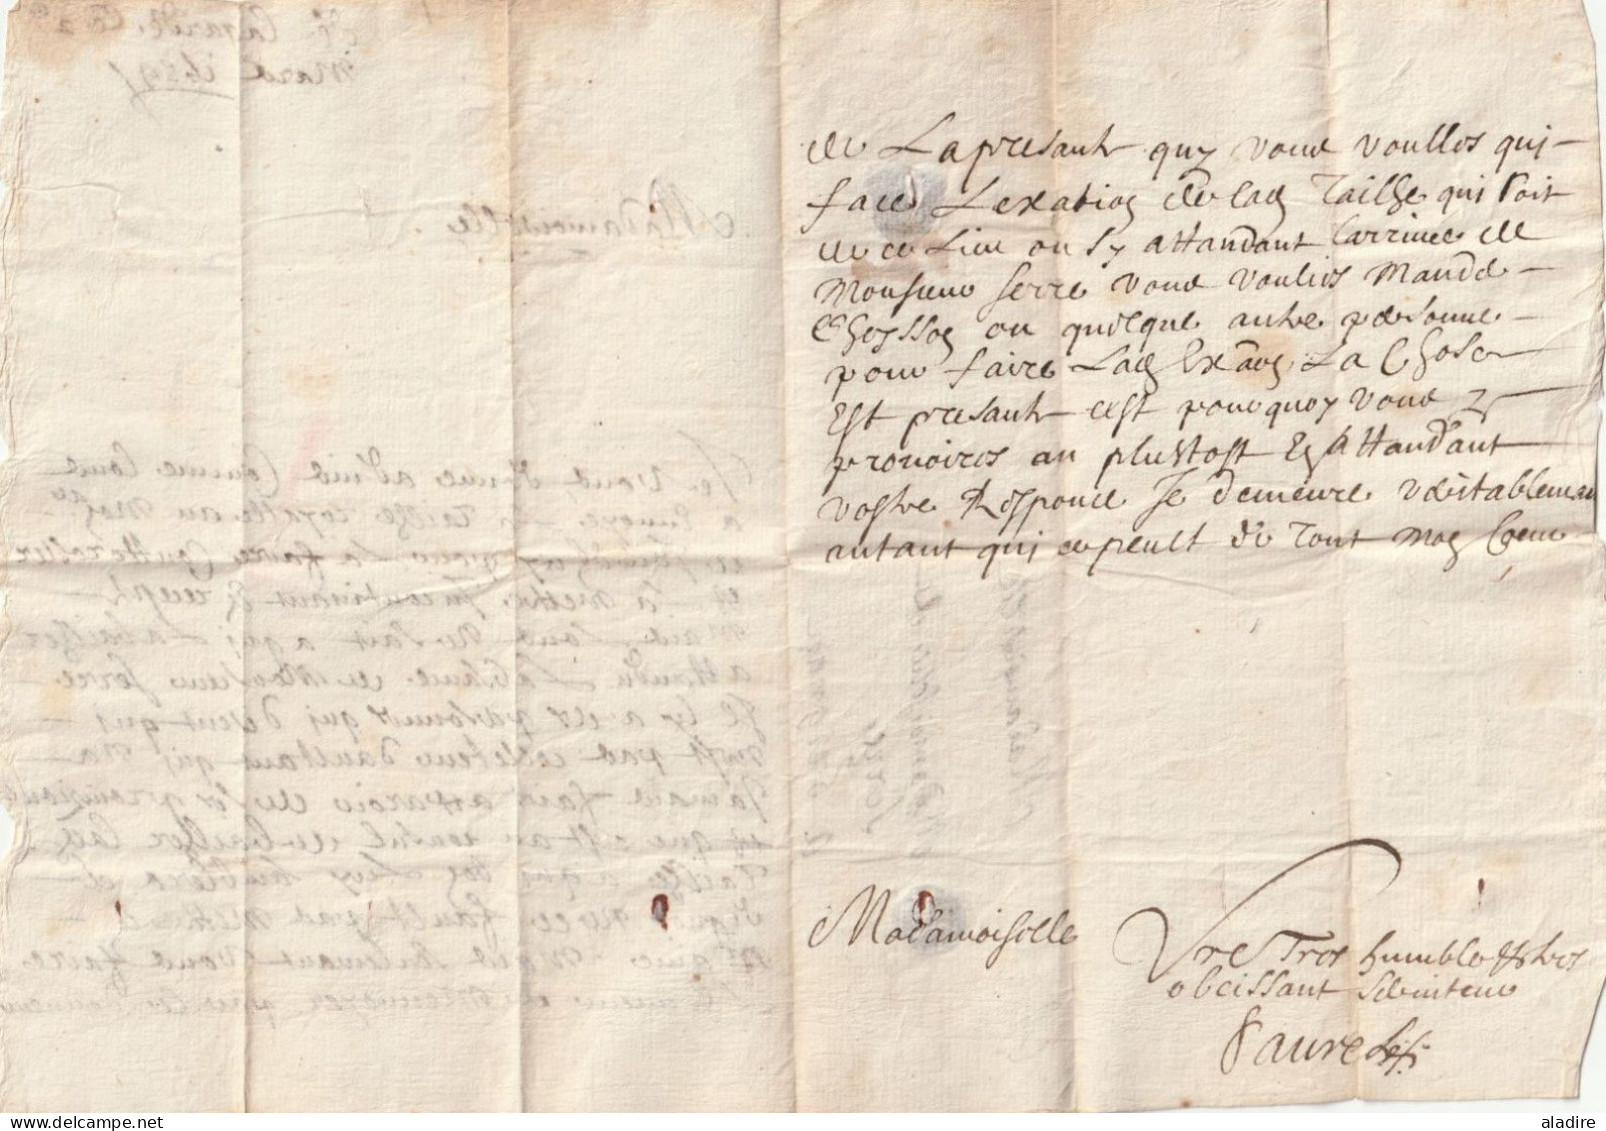 1659 - Lettre Pliée Avec Correspondance De 2 Pages De Lagarde D'Apt, Vaucluse Vers Grignan, Drôme - ....-1700: Precursors